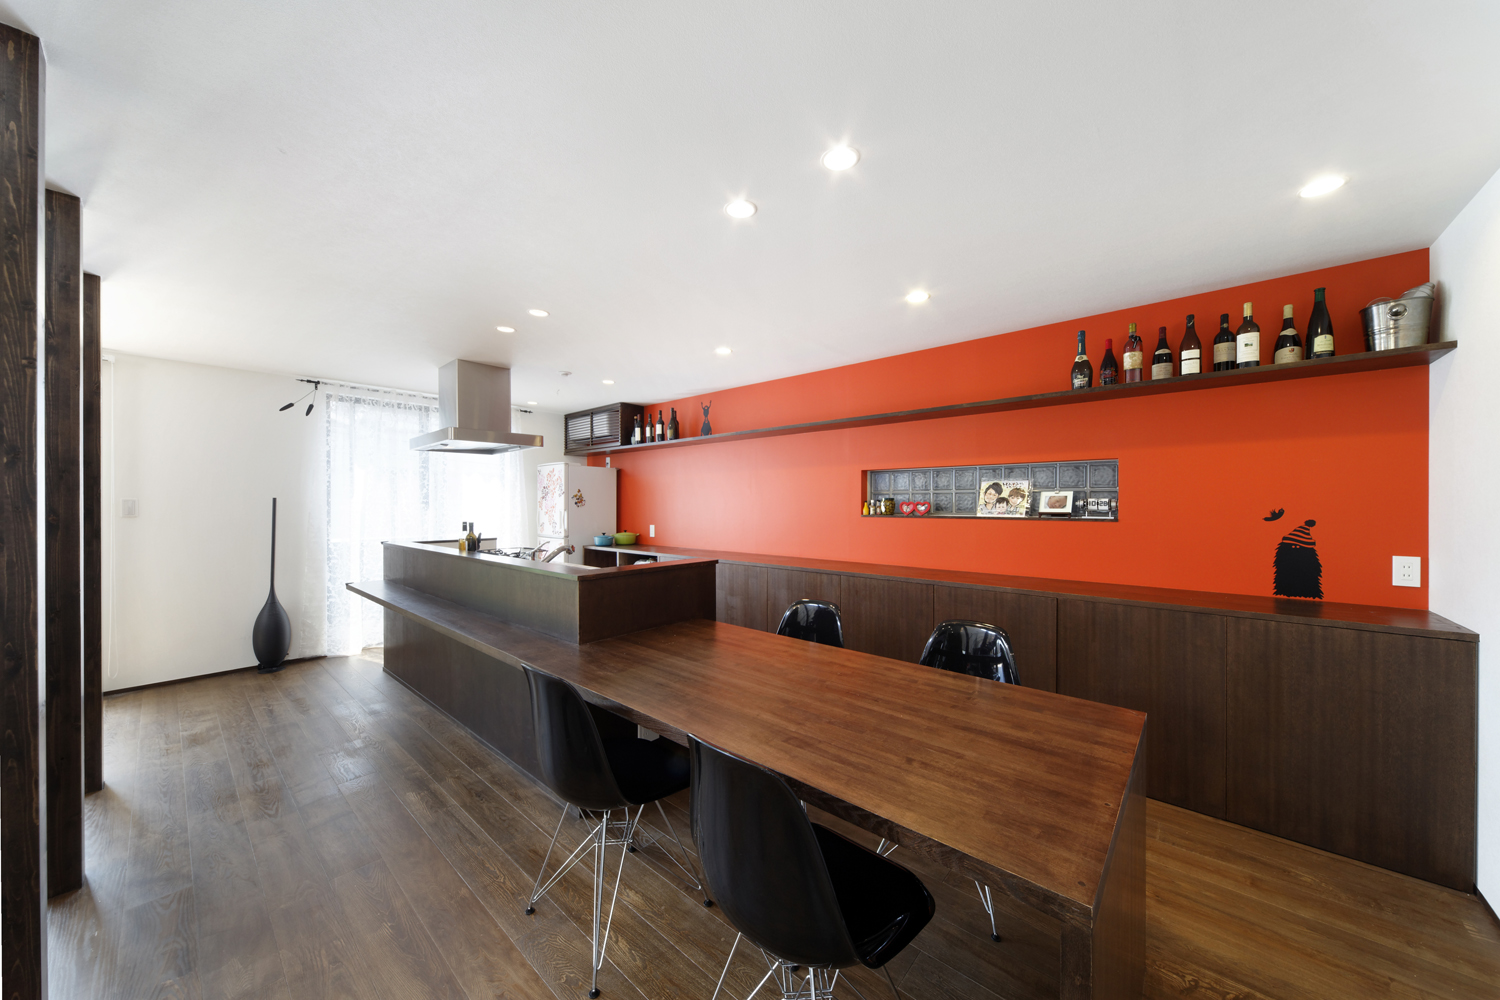 食欲を増す朱色の壁面が、焦げ茶色でまとめた空間にインパクトを与えるキッチン